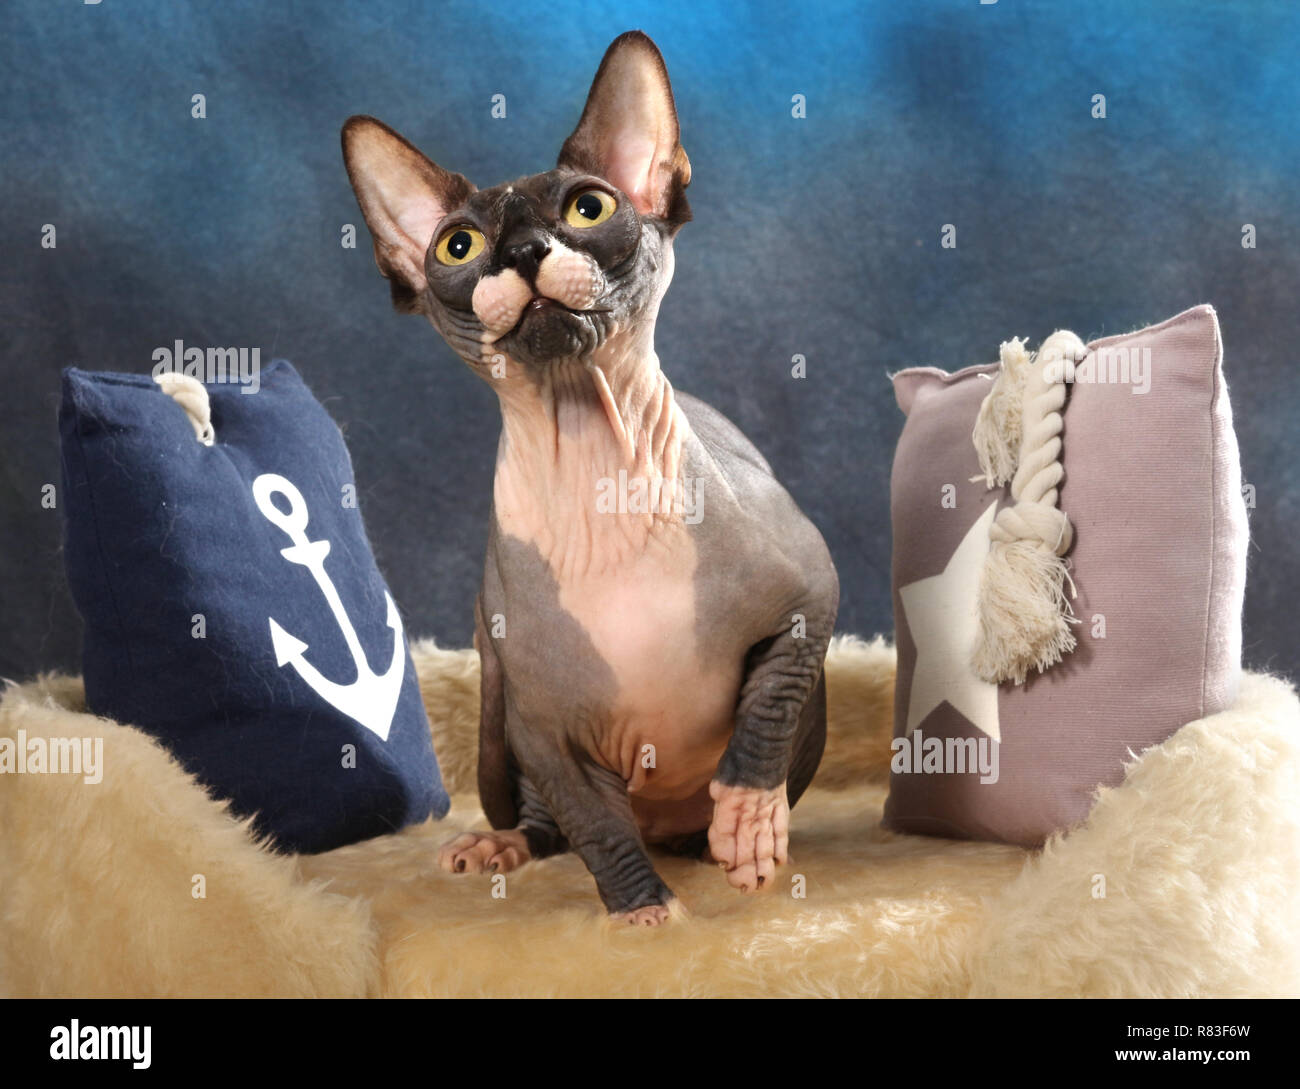 Chat sphinx, bambino, un chat avec des pattes courtes, assis sur un coussin Banque D'Images